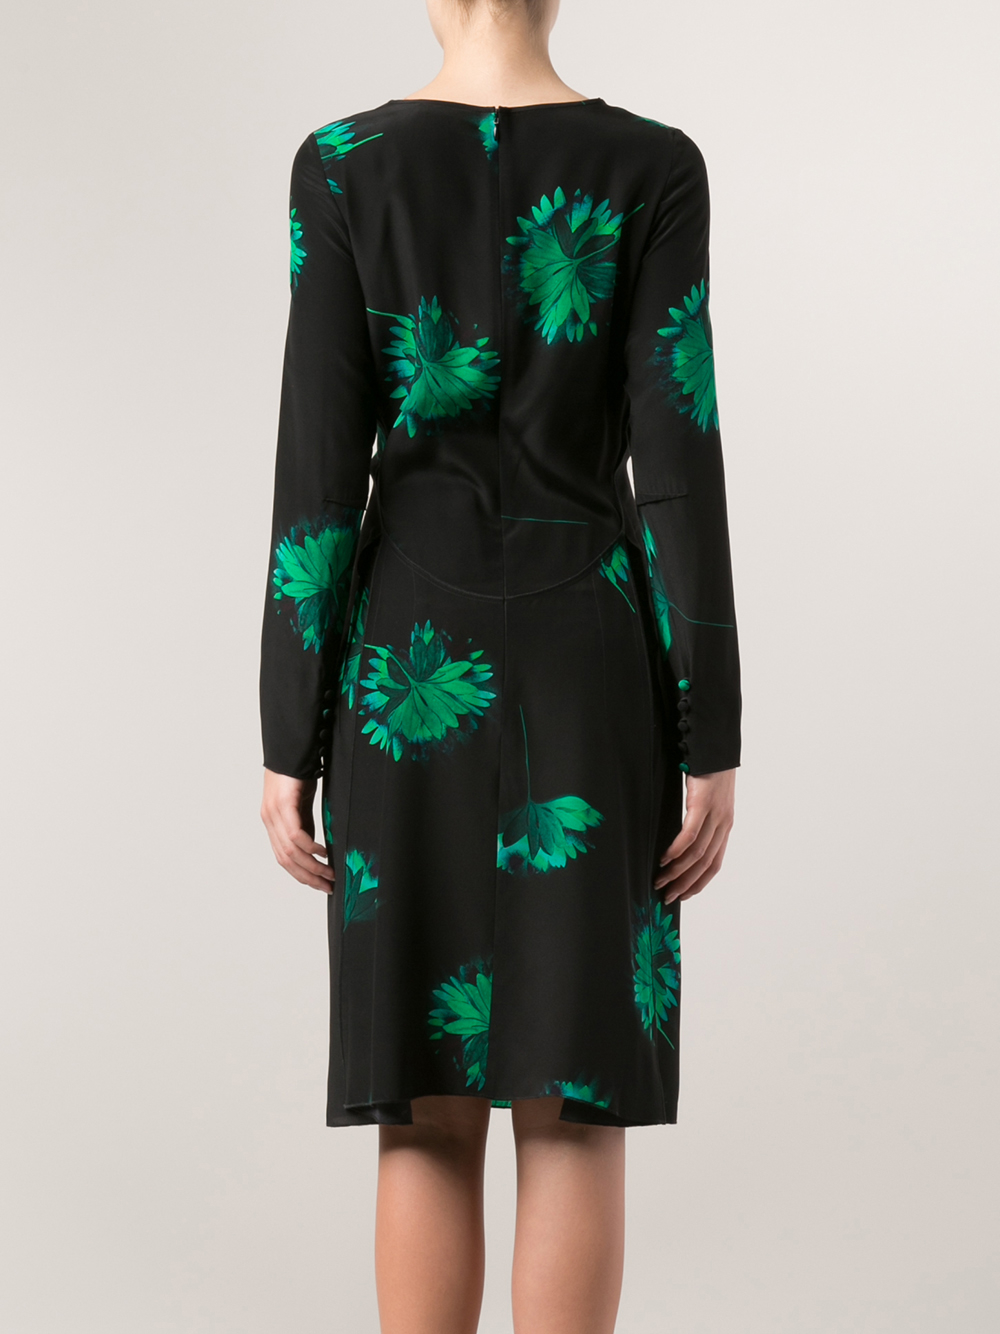 Nina Ricci Floral-Print Silk Dress in Black (Green) - Lyst